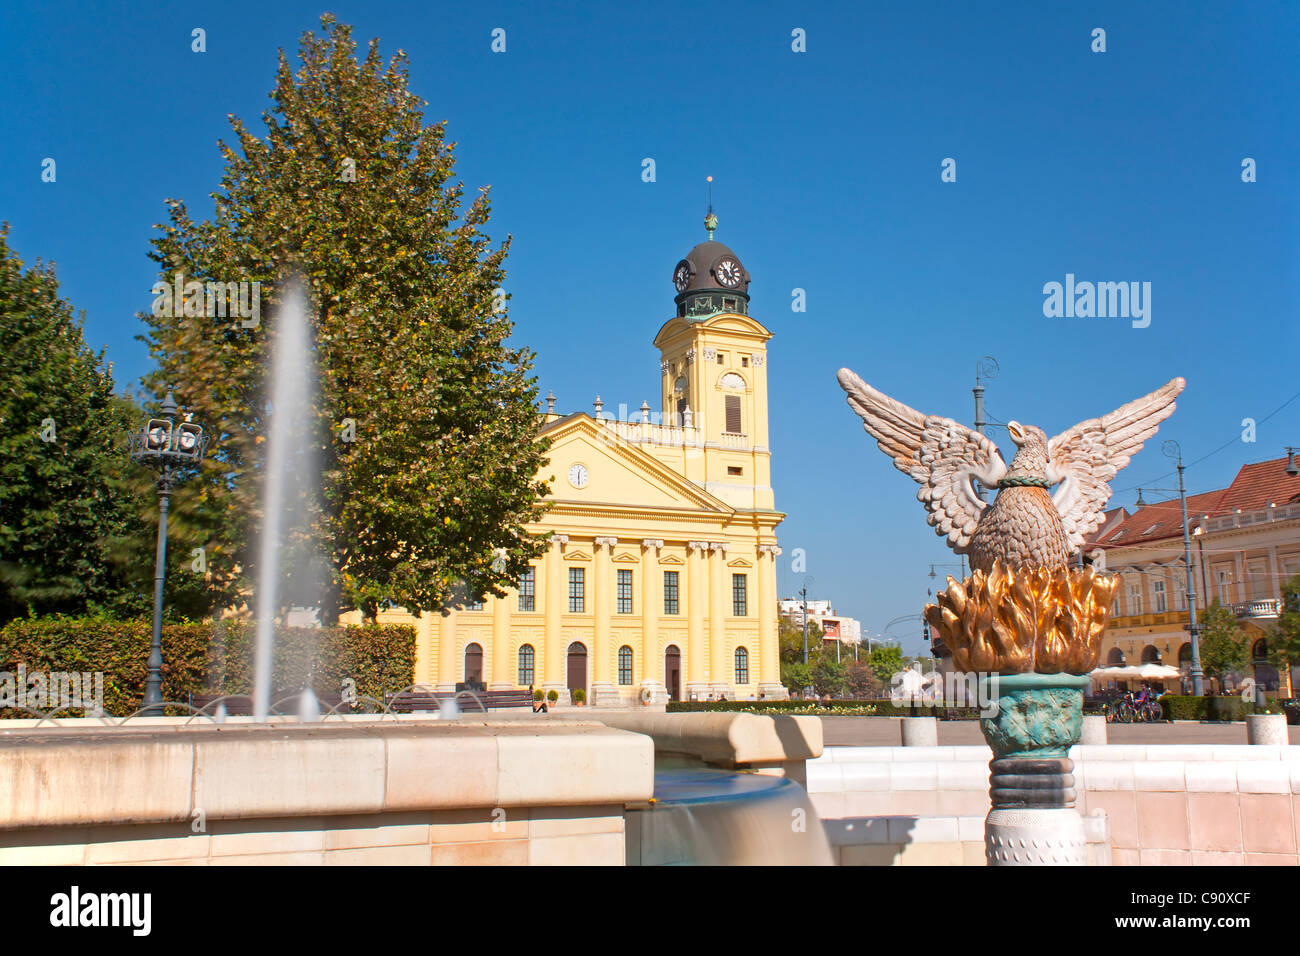 Statue de Phoenix sur la place principale de Debrecen Hongrie commémorant la naissance de la ville Banque D'Images